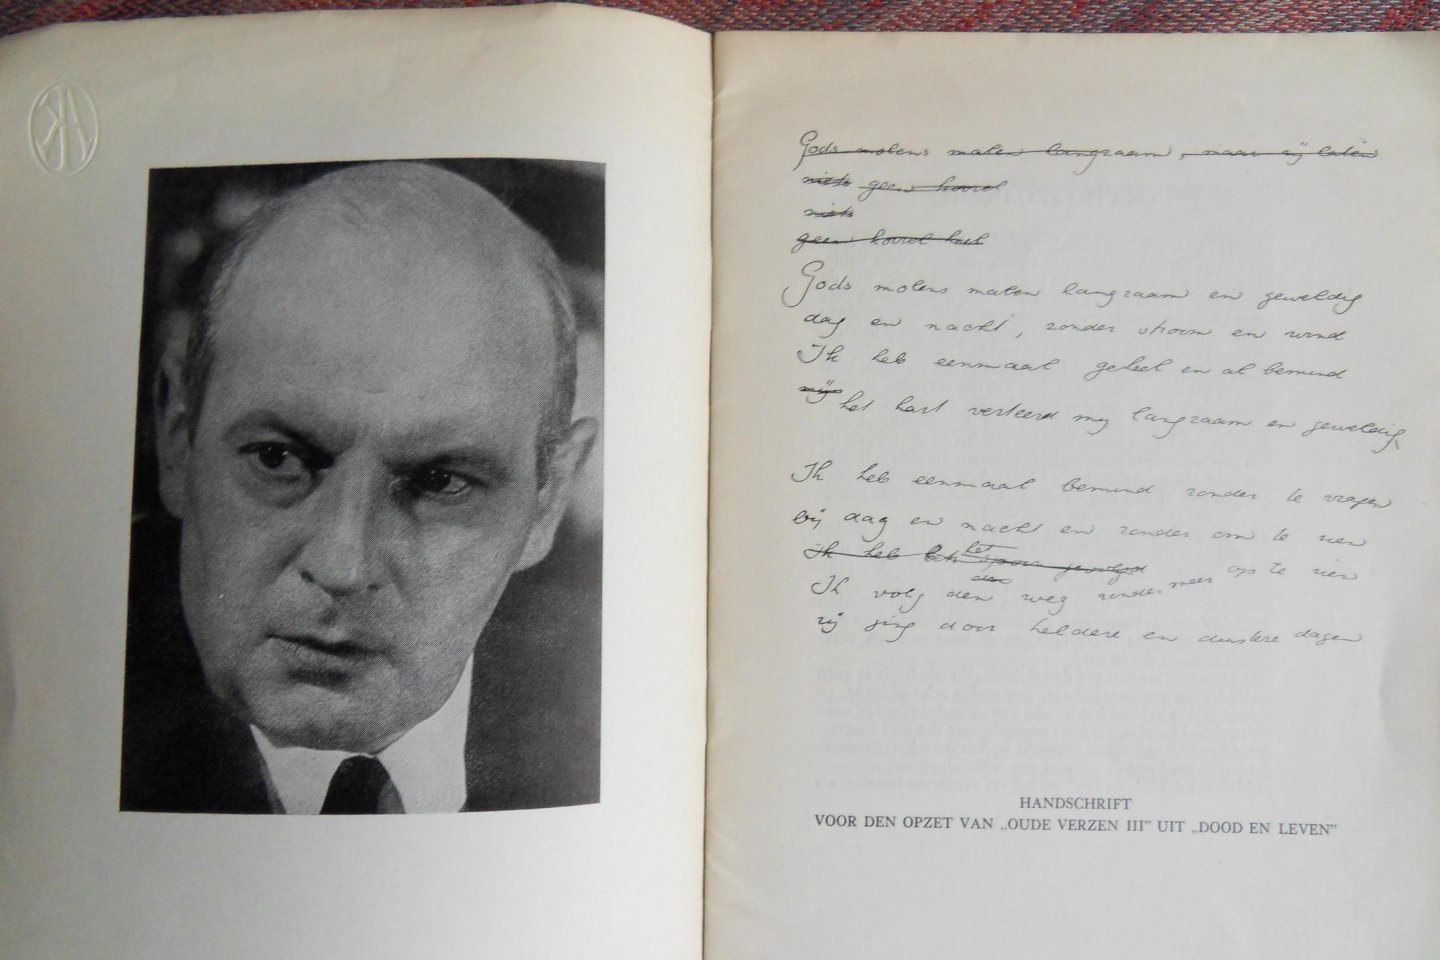 Werumeus Buning, J.W.F. - Tentoonstelling van de werken van J.W.F. Werumeus Buning t.g.v. zijn Vijftigsten Verjaardag op zondag 4 mei 1941. [ Genummerd ex. 30 / 300 ].